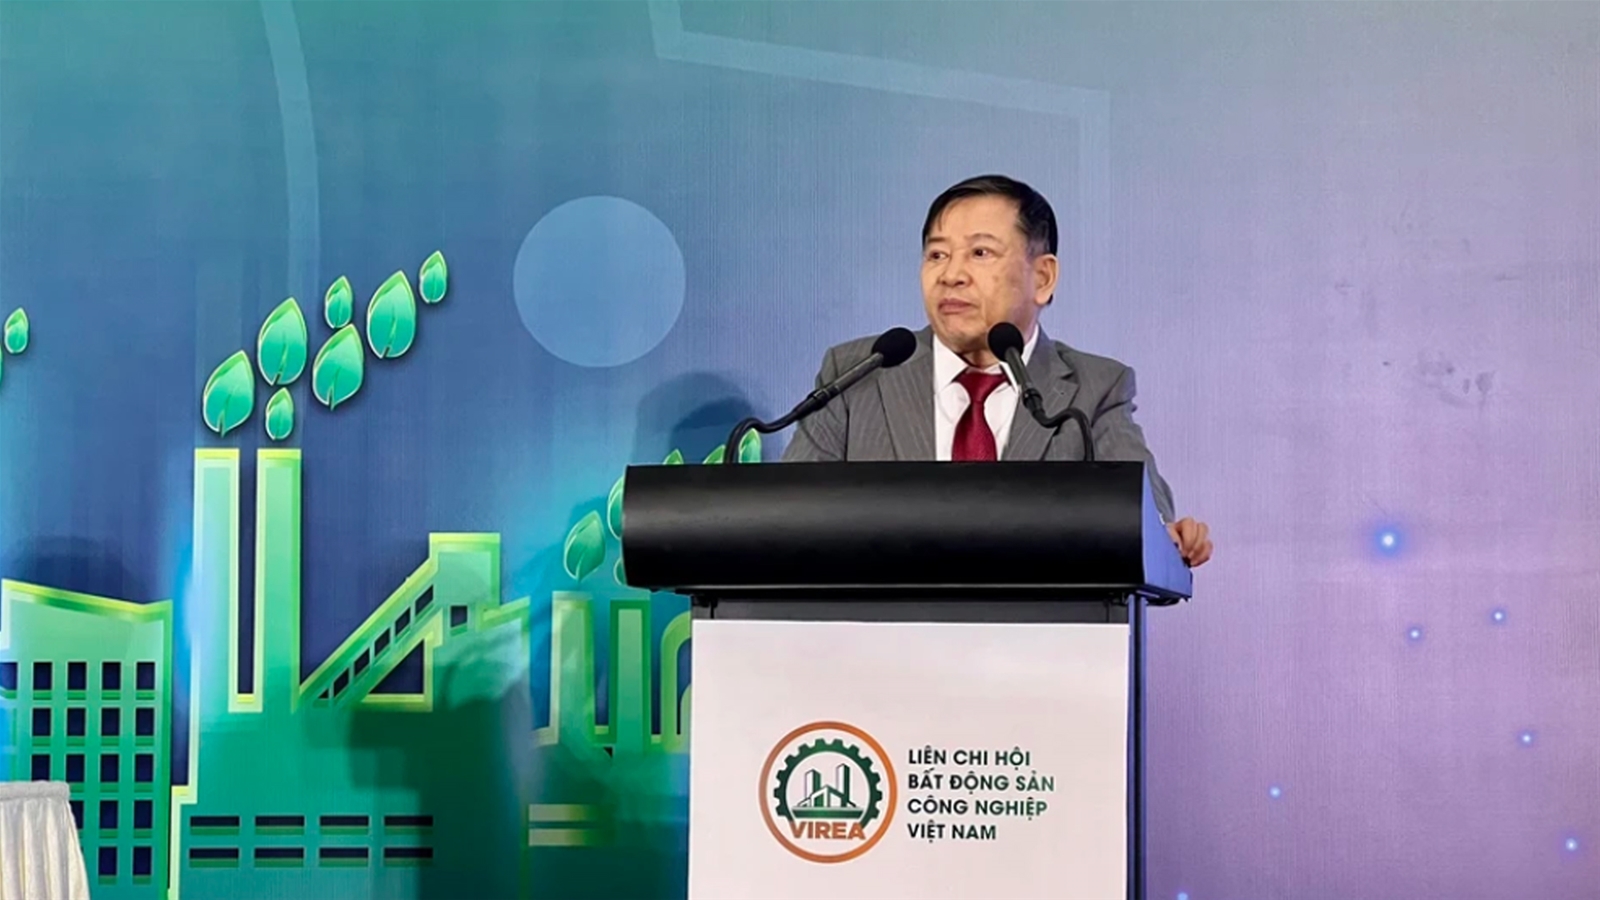  TS. Nguyễn Văn Khôi đắc cử Chủ tịch Liên chi hội Bất động sản công nghiệp Việt Nam nhiệm kỳ 2024 – 2029 